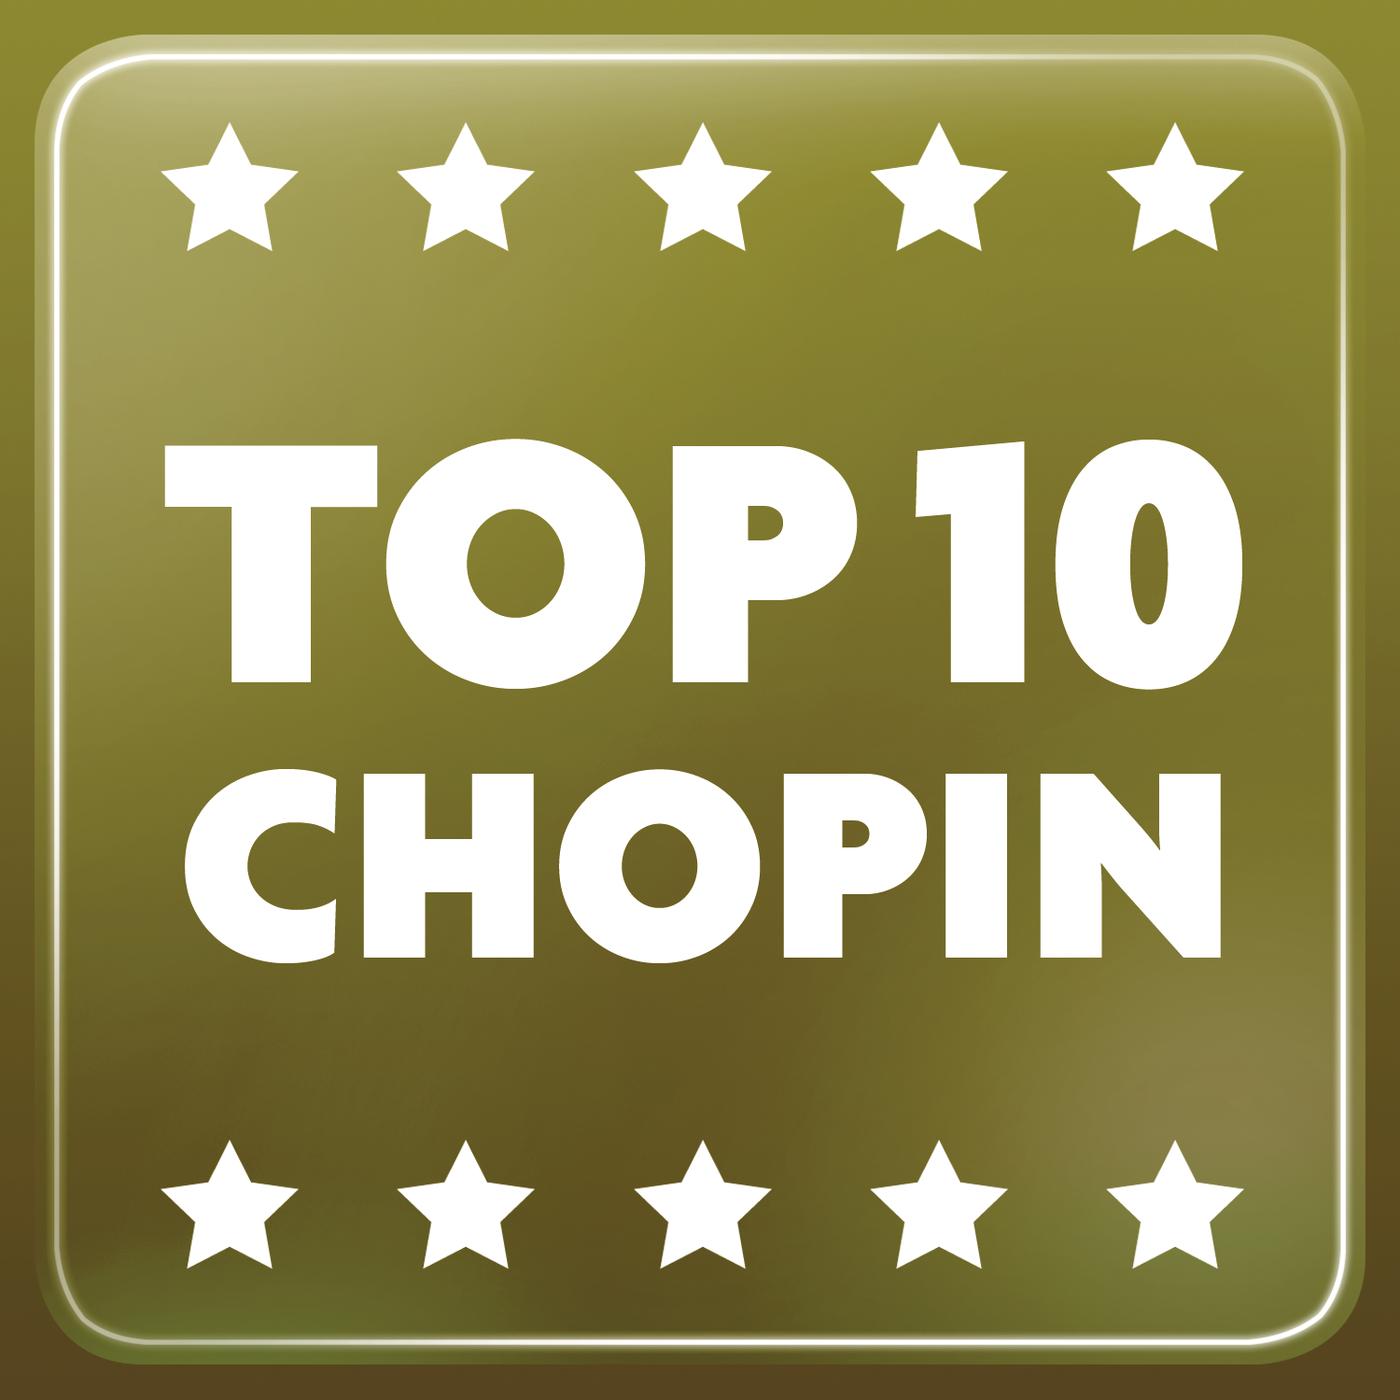 Top 10 Chopin